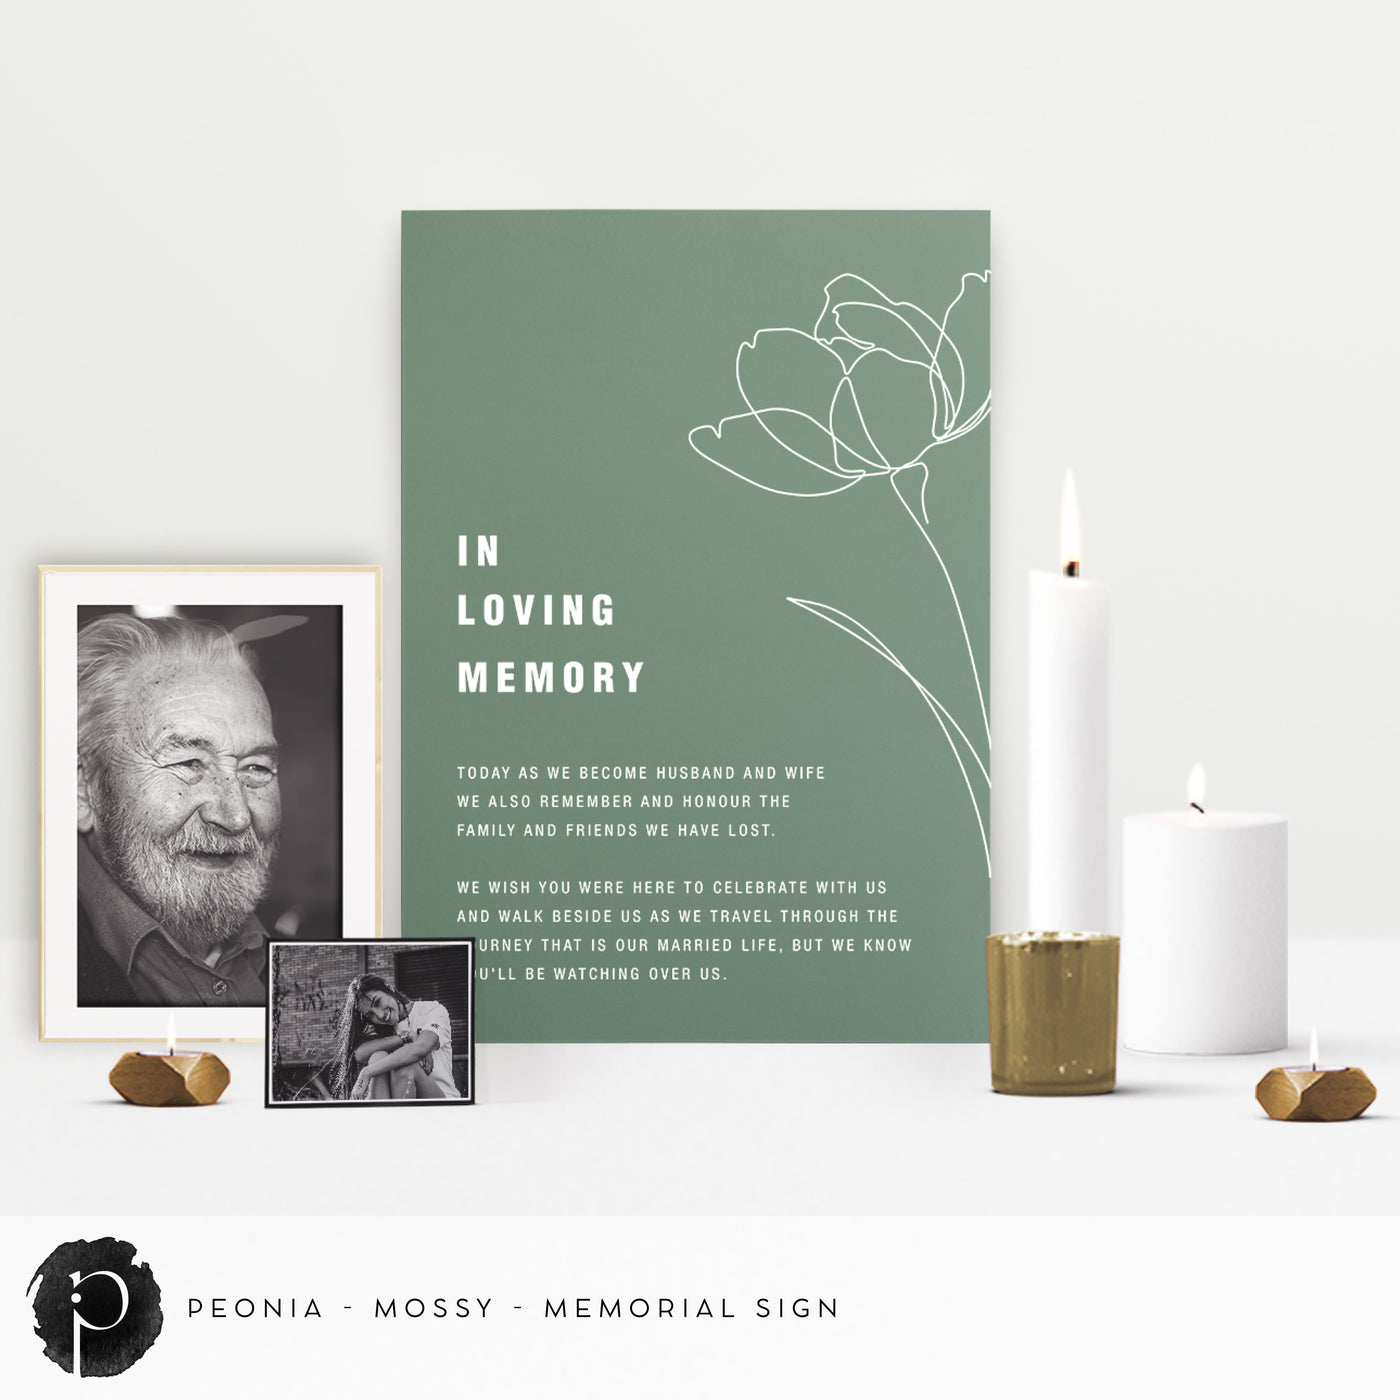 Peonia -  In Loving Memory Memorial Sign